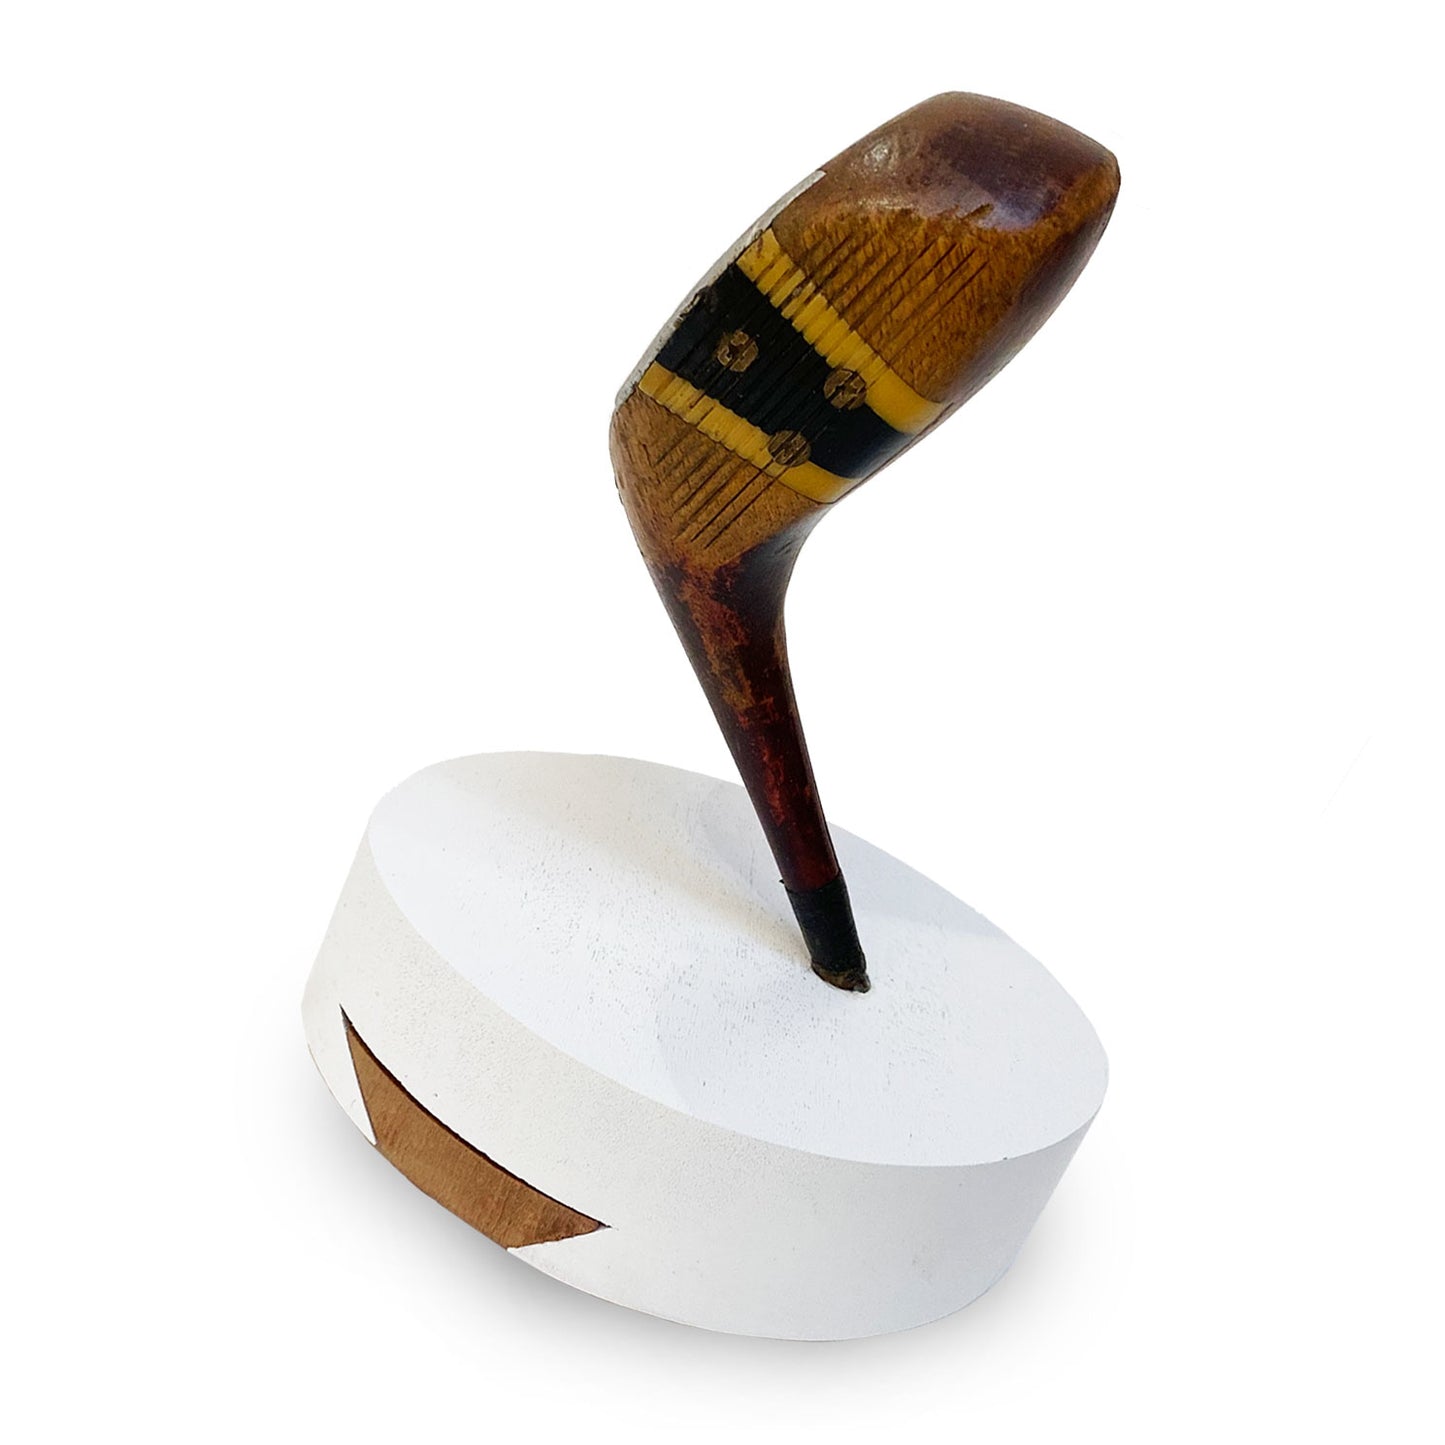 Mazza da golf in legno 2 sudafricana usata per appendiabiti realizzato a mano